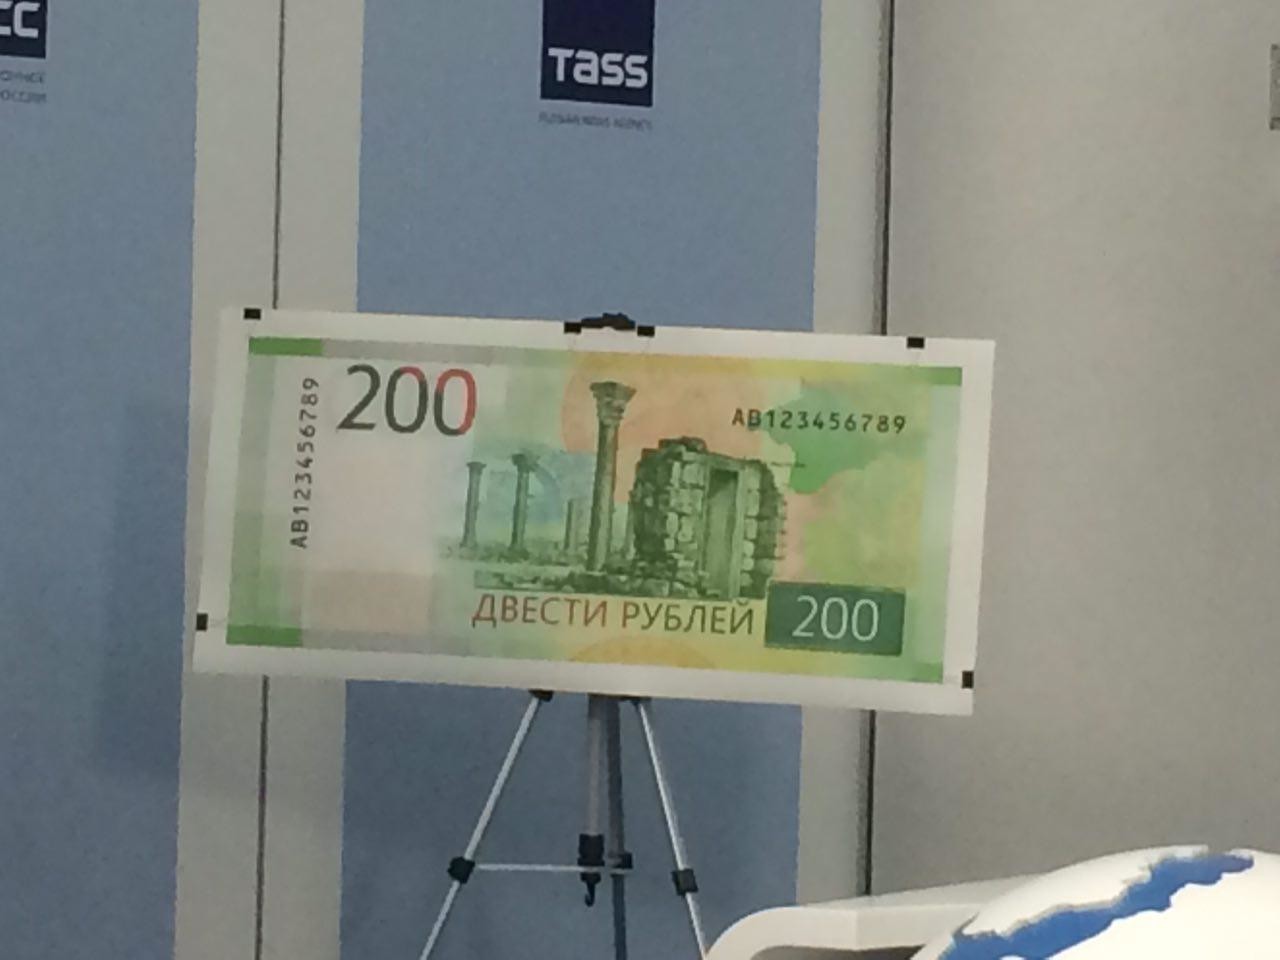 200 рублей поступили